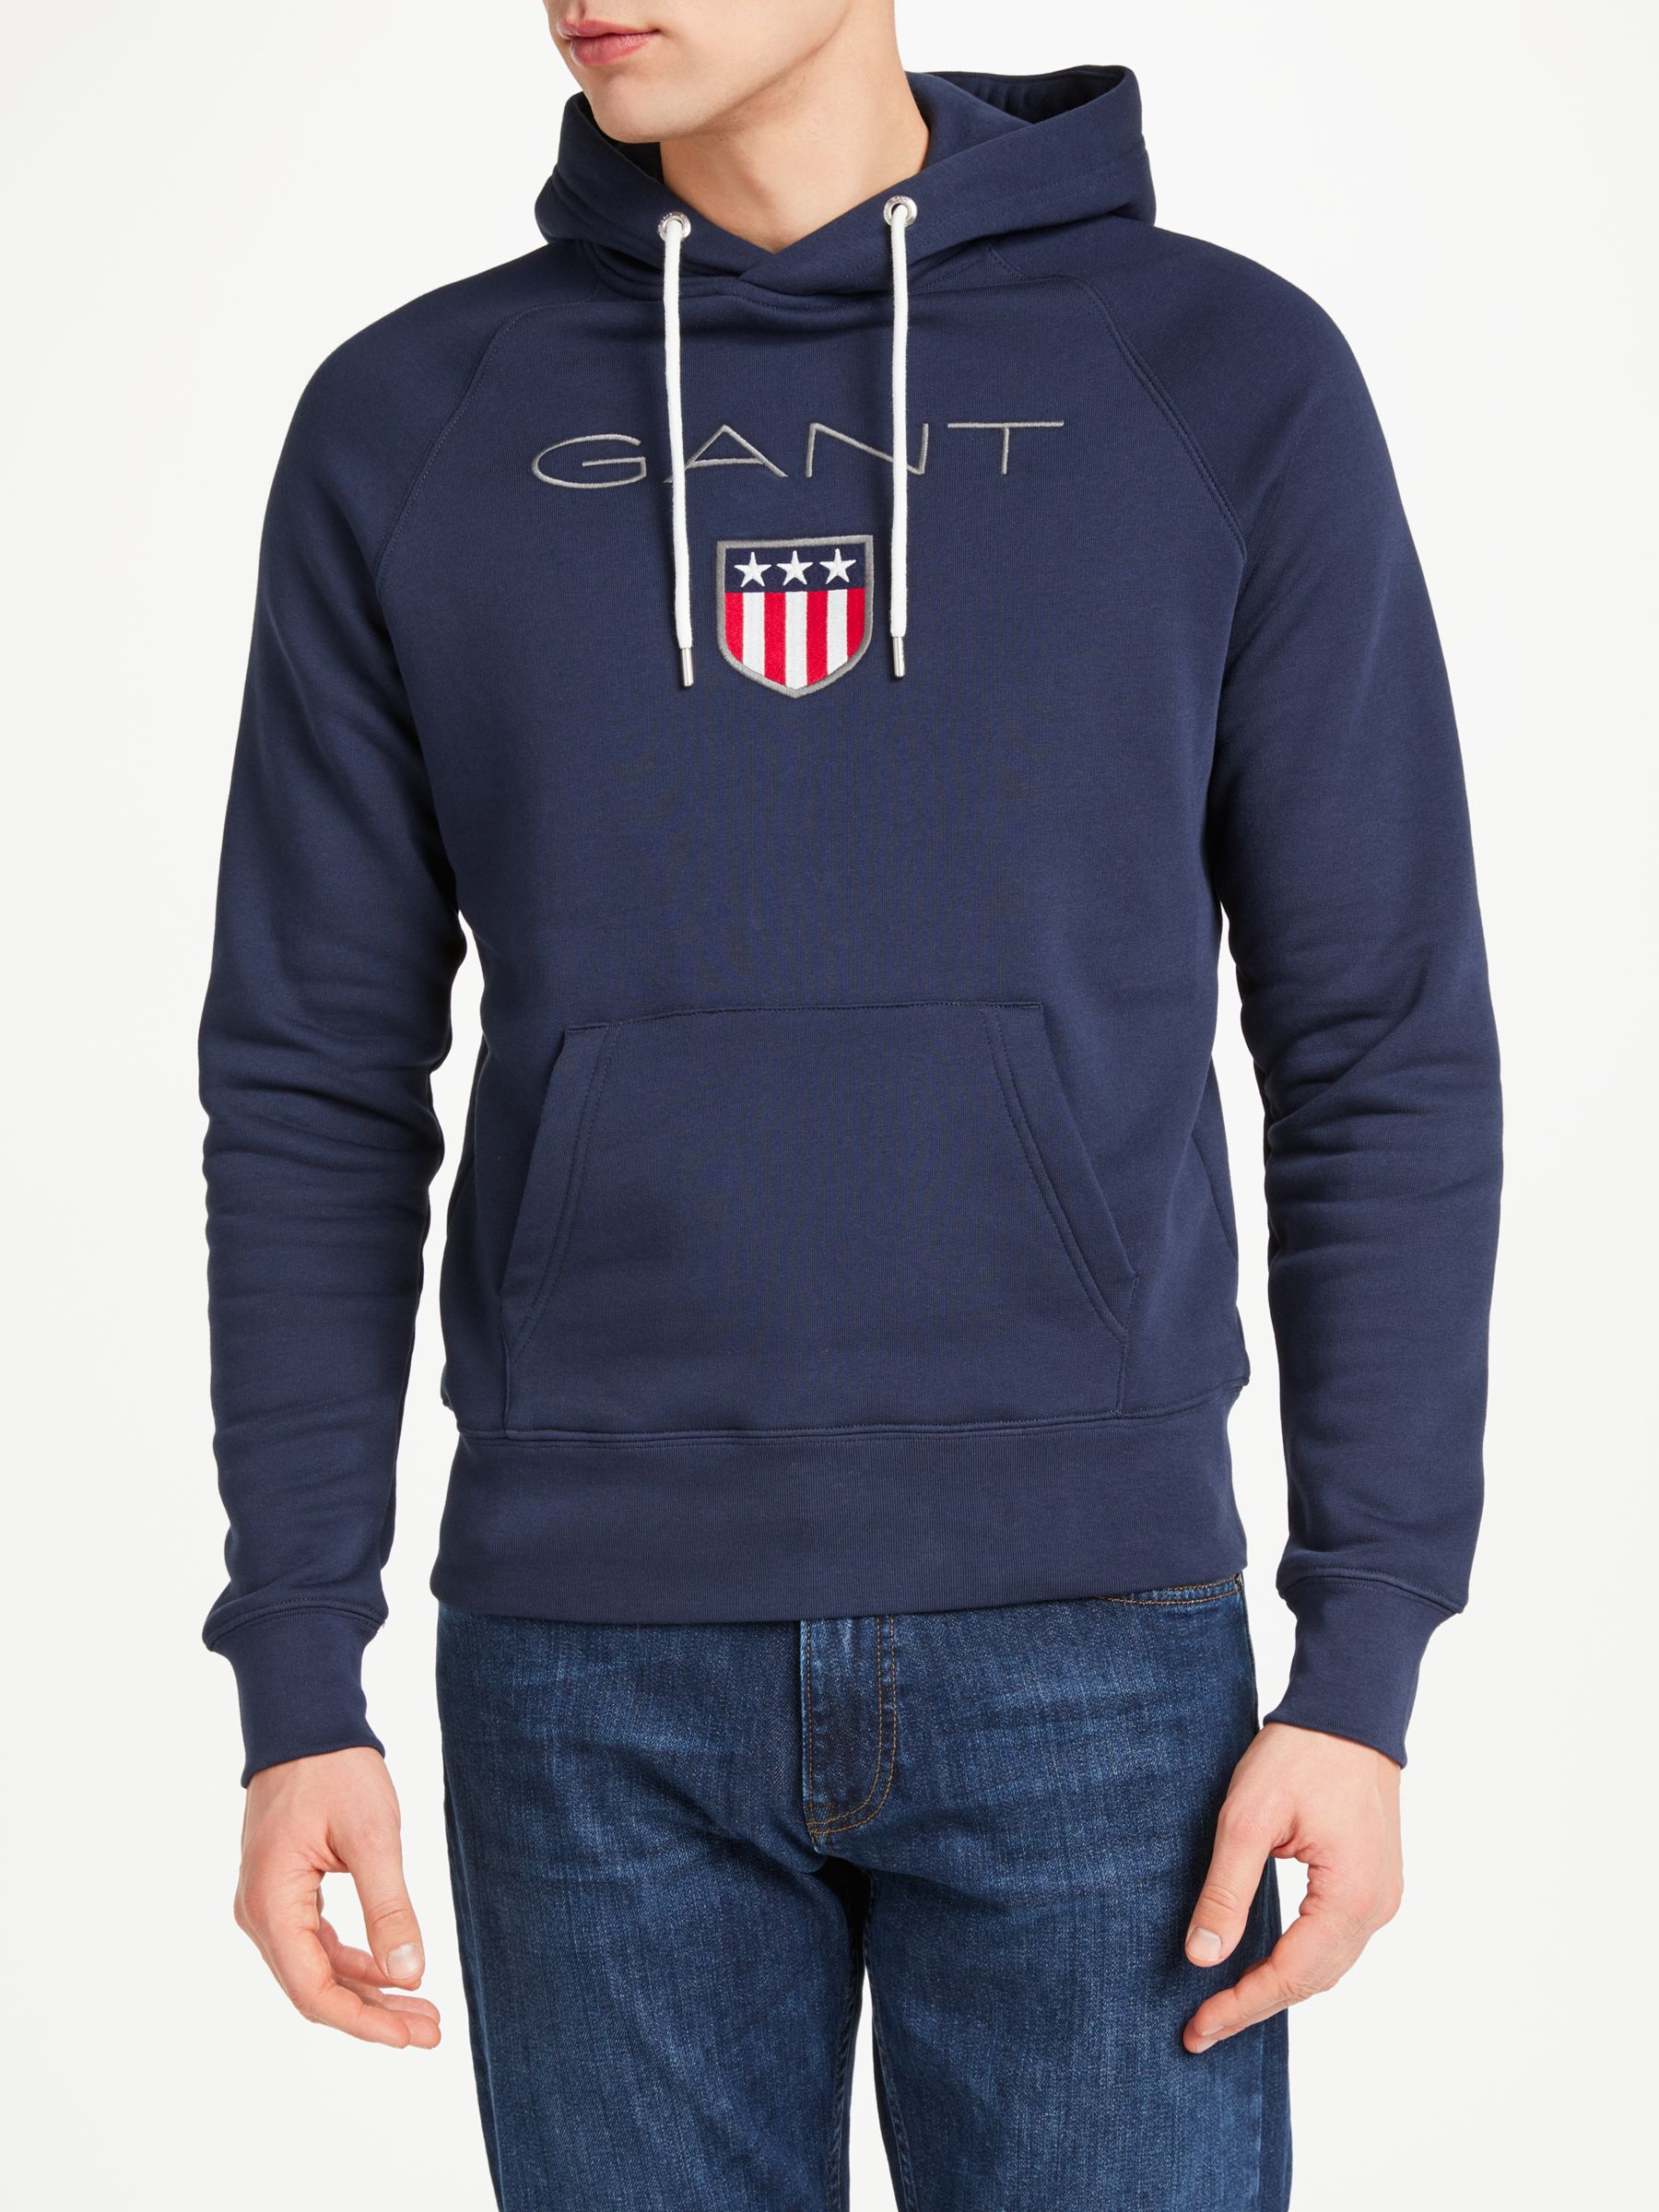 GANT Shield Embroidered Pullover Sweatshirt, Navy, XL